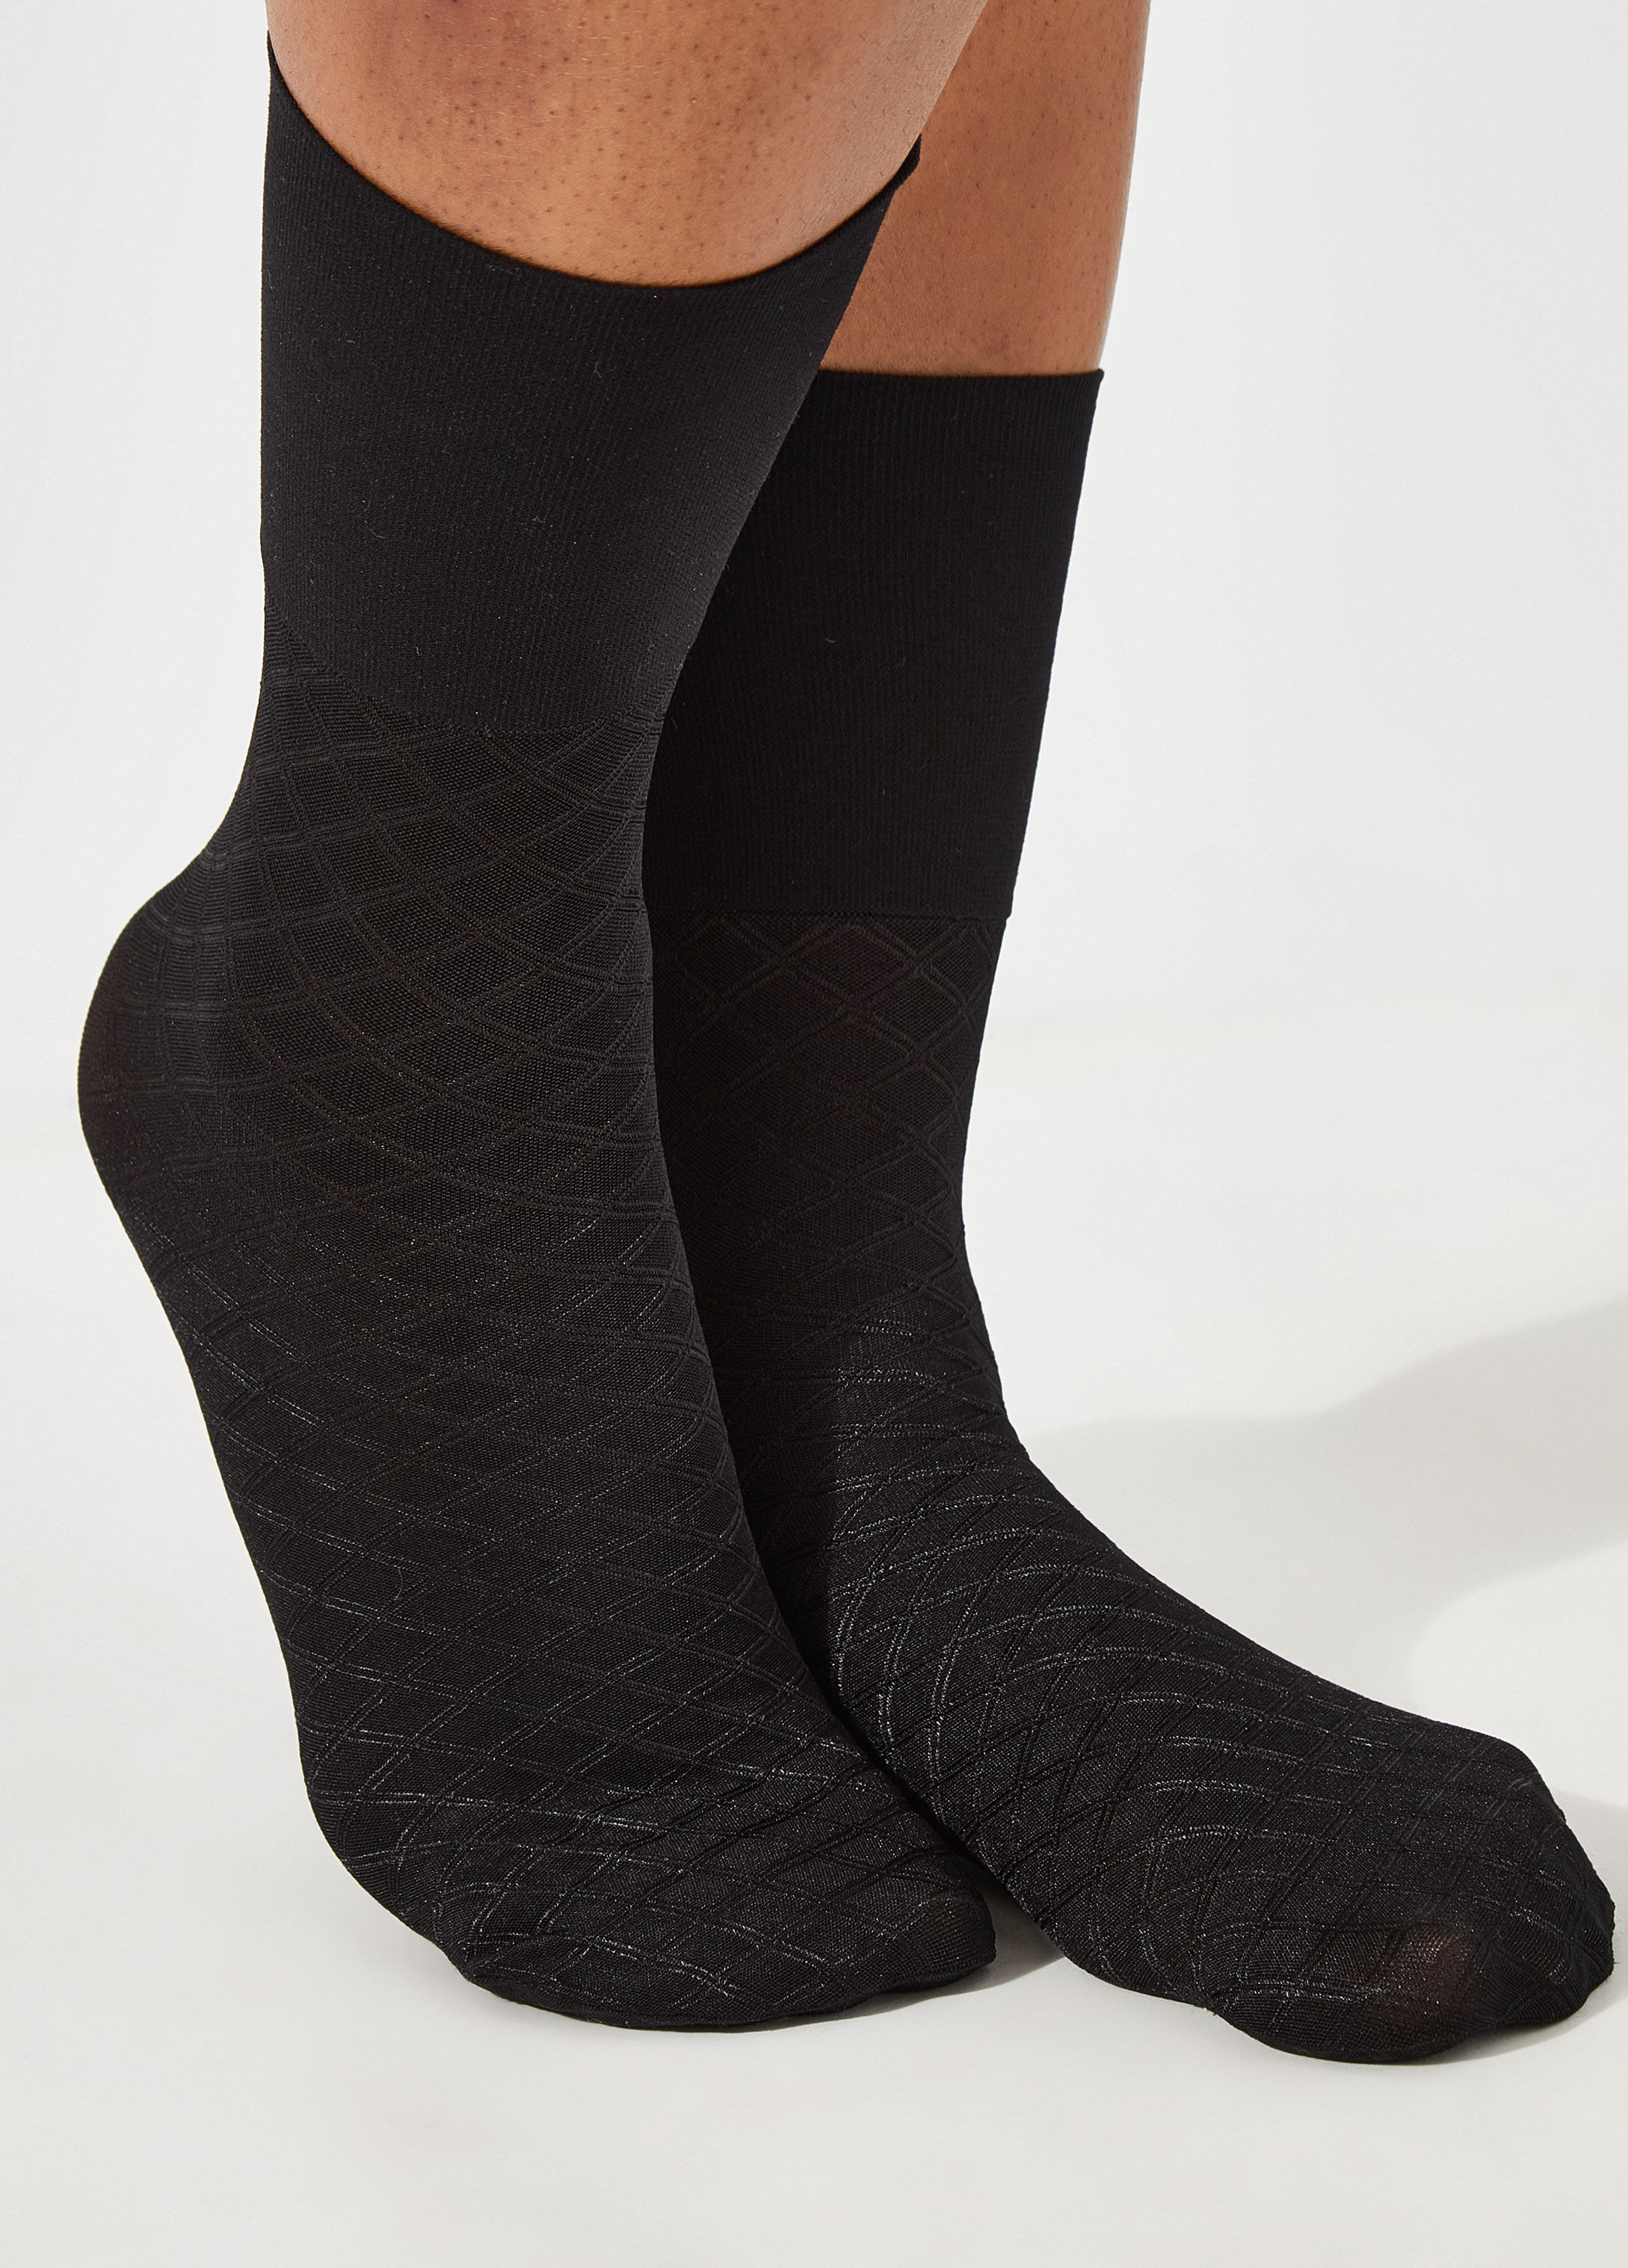 Buy Black Patterned Trouser Socks 3 Pack  48  Socks  Tu